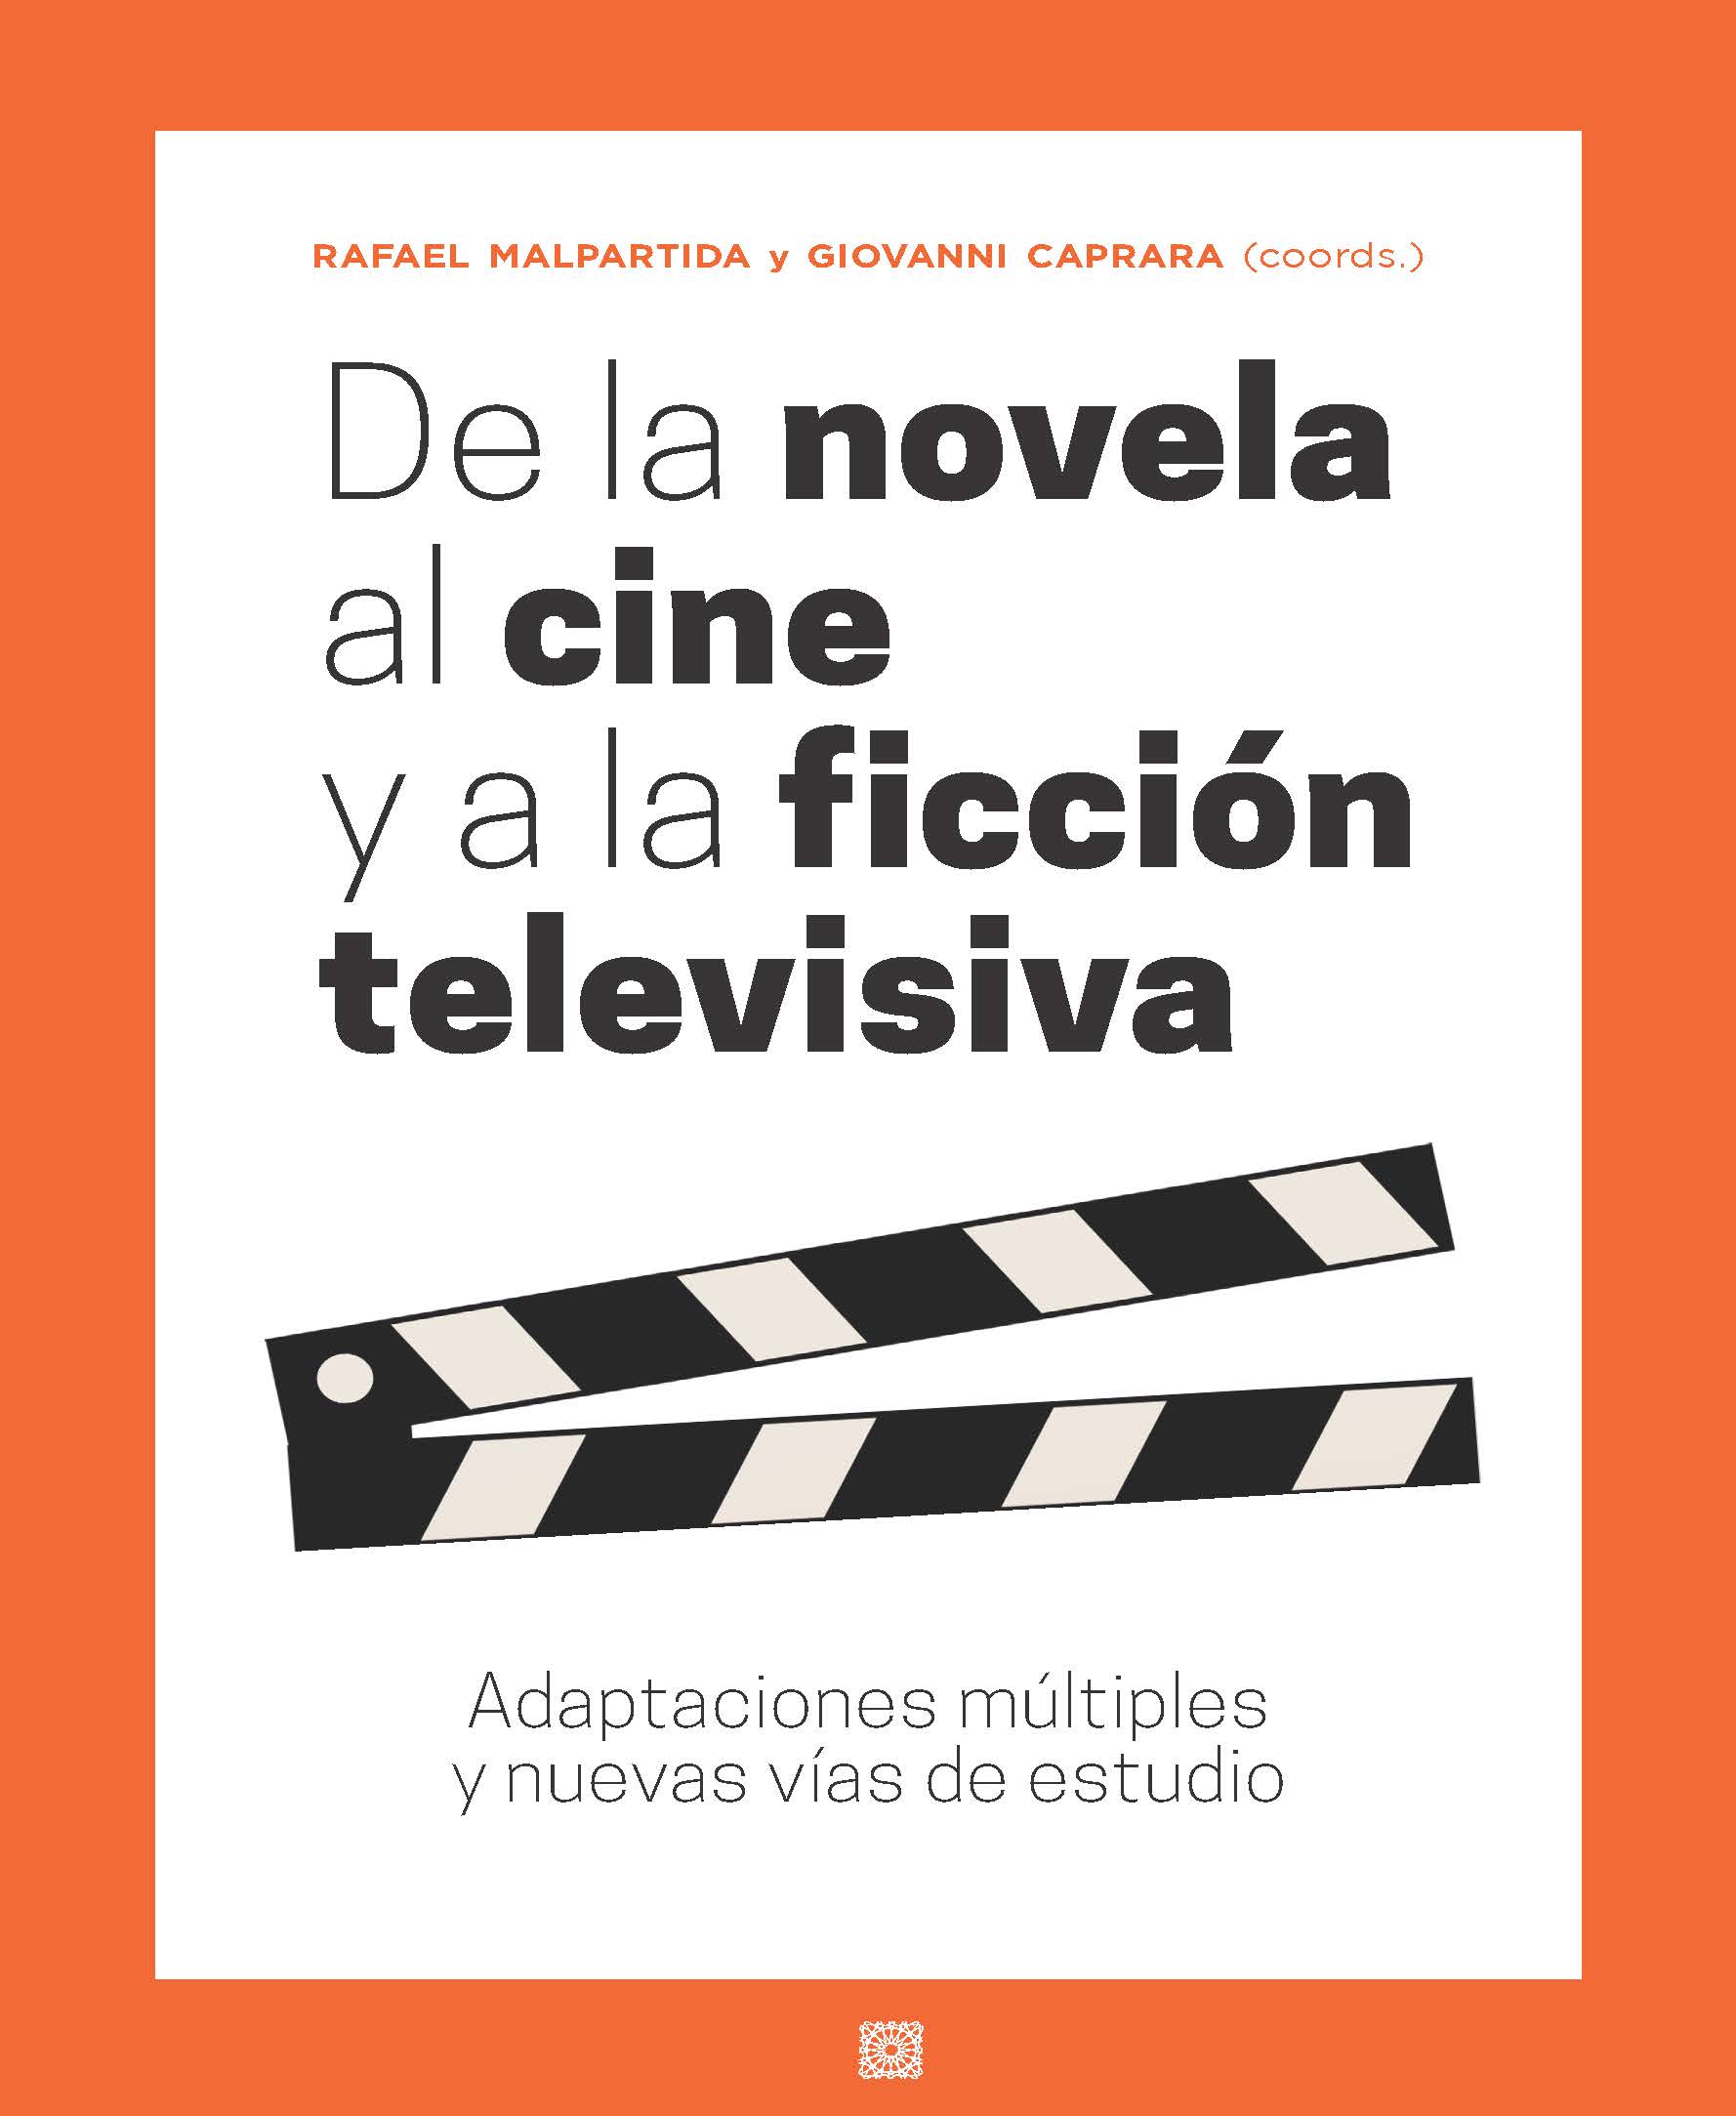 Imagen de portada del libro De la novela al cine y a la ficción televisiva